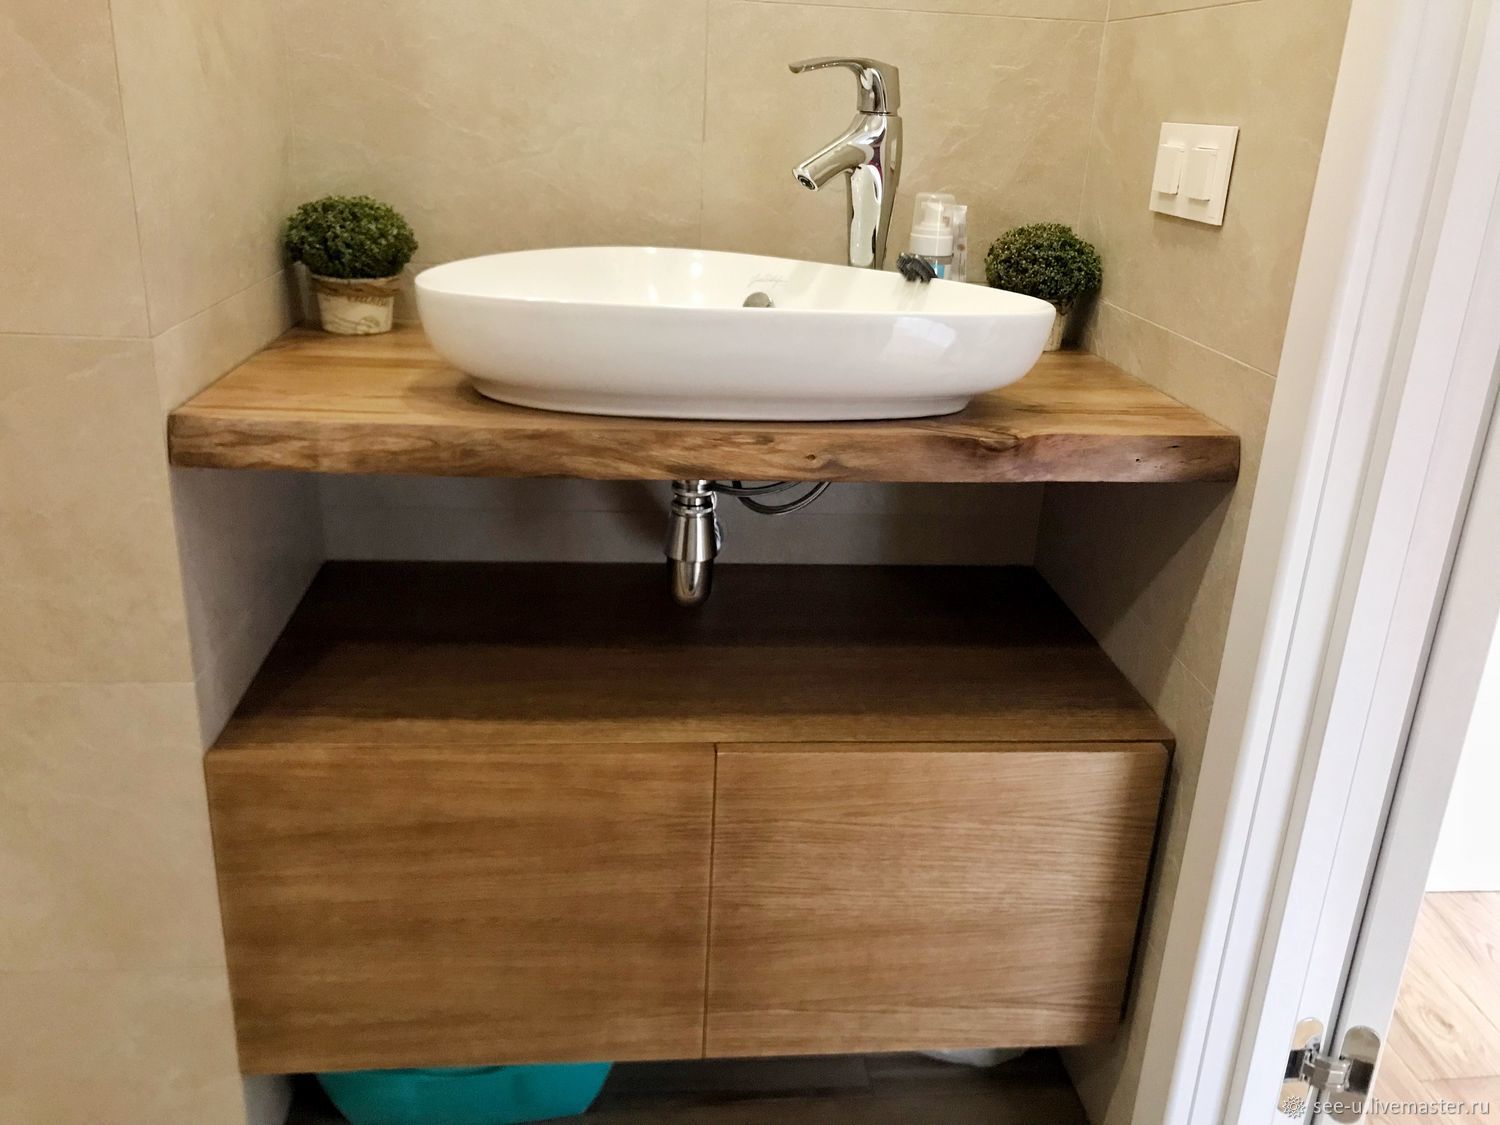 Столешница в ванную под раковину: выбор и самостоятельное изготовление | онлайн-журнал о ремонте и дизайне